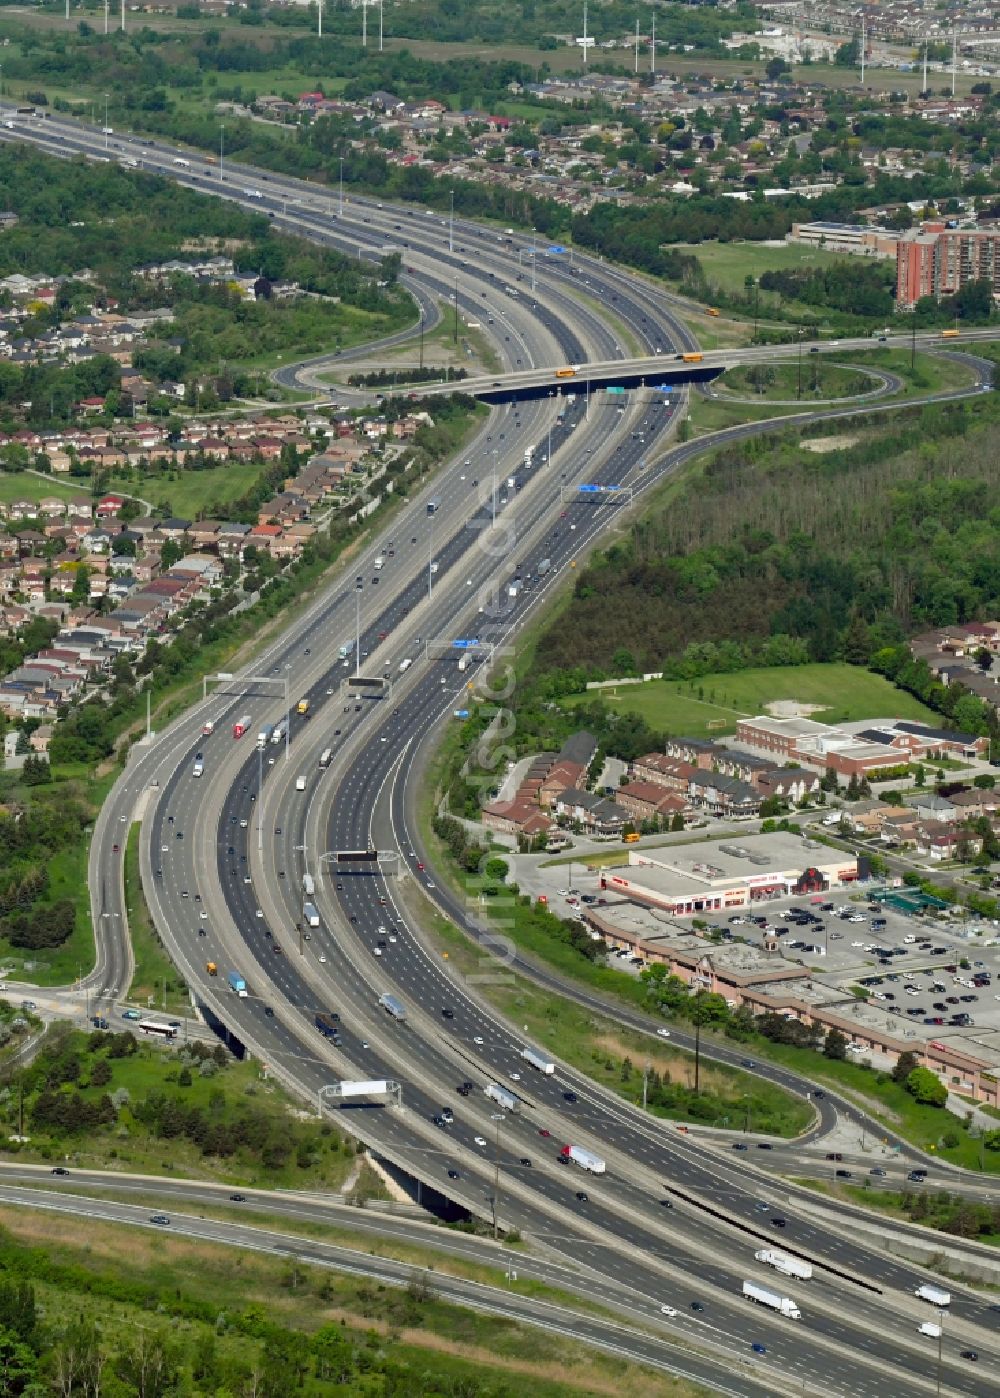 Toronto von oben - Autobahn- Streckenverlauf des Ontario 401 Expressway in Toronto in Ontario, Kanada